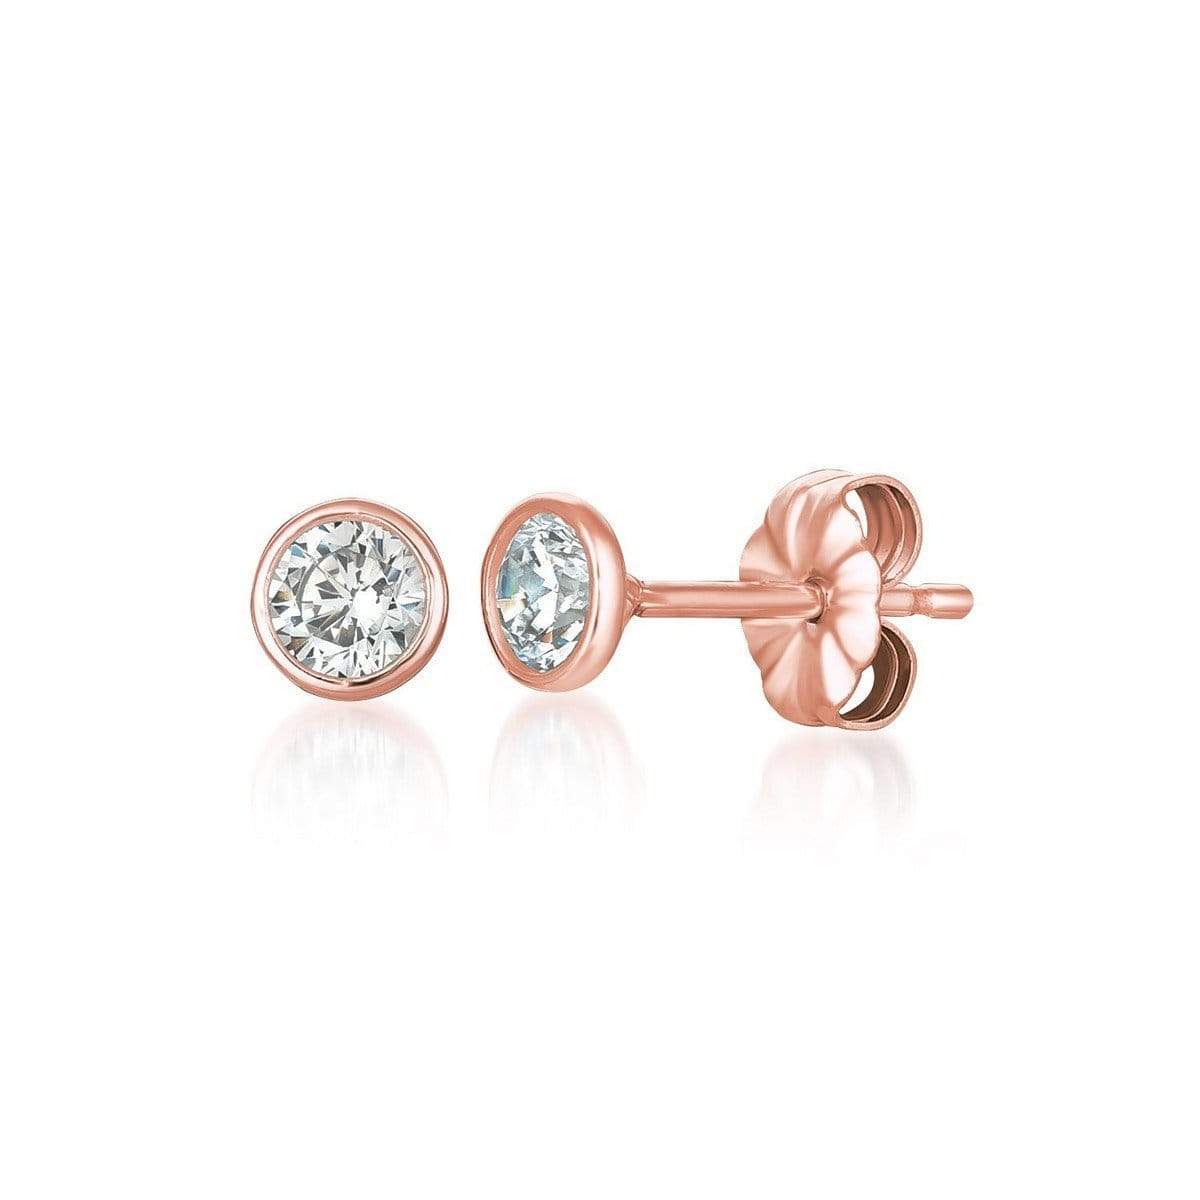 Crislu Jewelry CRISLU Solitaire Bezel Set Earrings 1.00 Carat Finished in 18KT Rose Gold